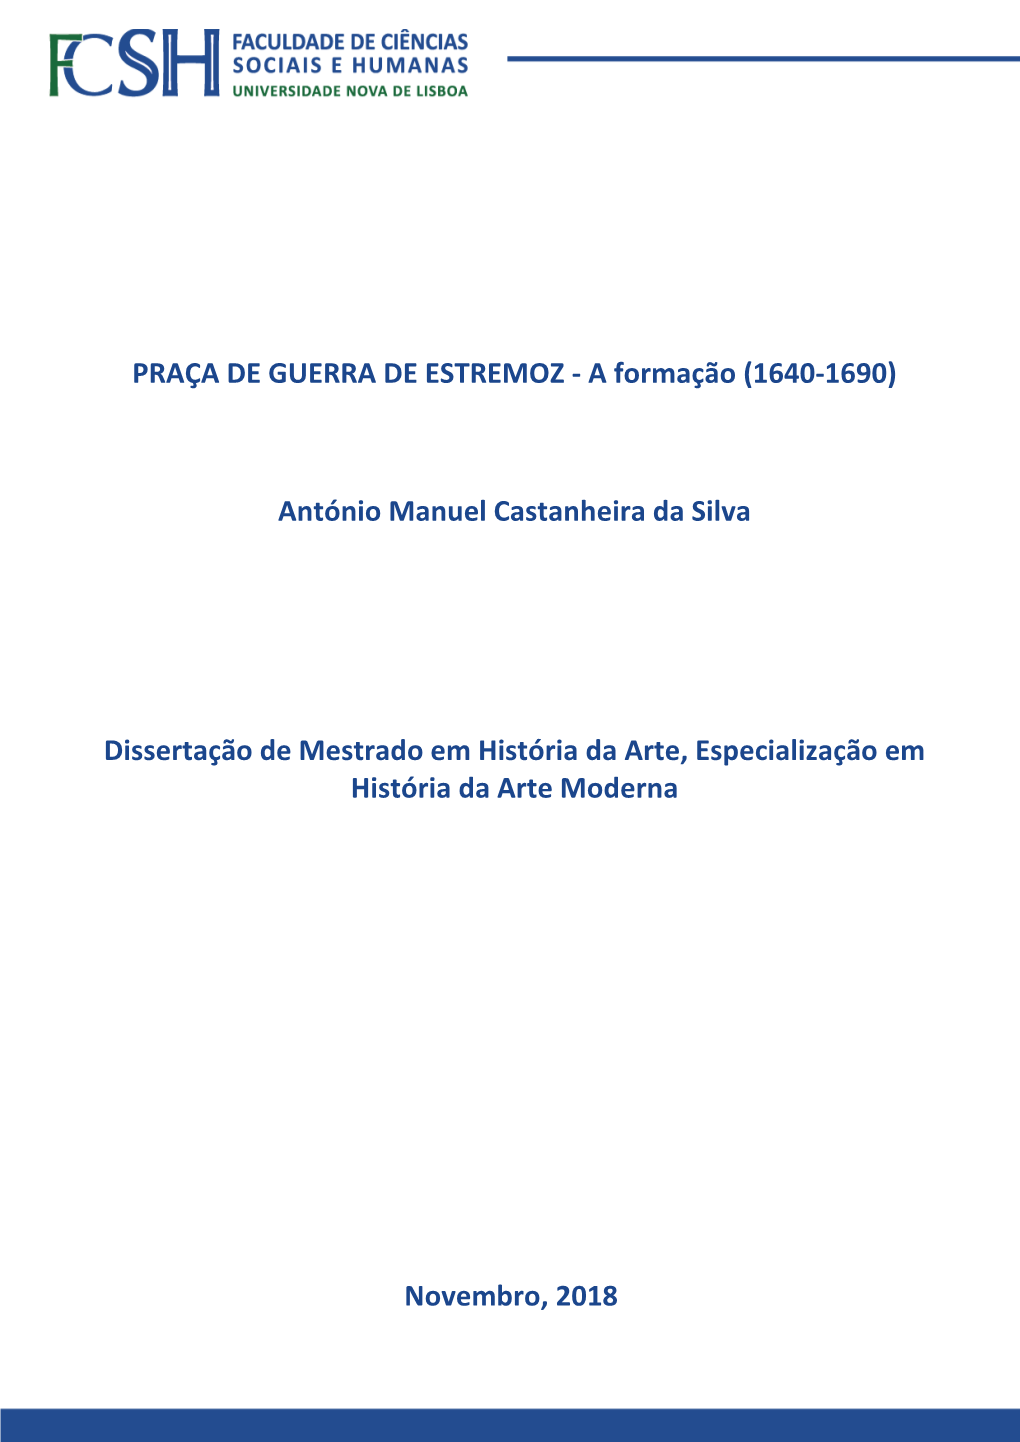 PRAÇA DE GUERRA DE ESTREMOZ - a Formação (1640-1690)